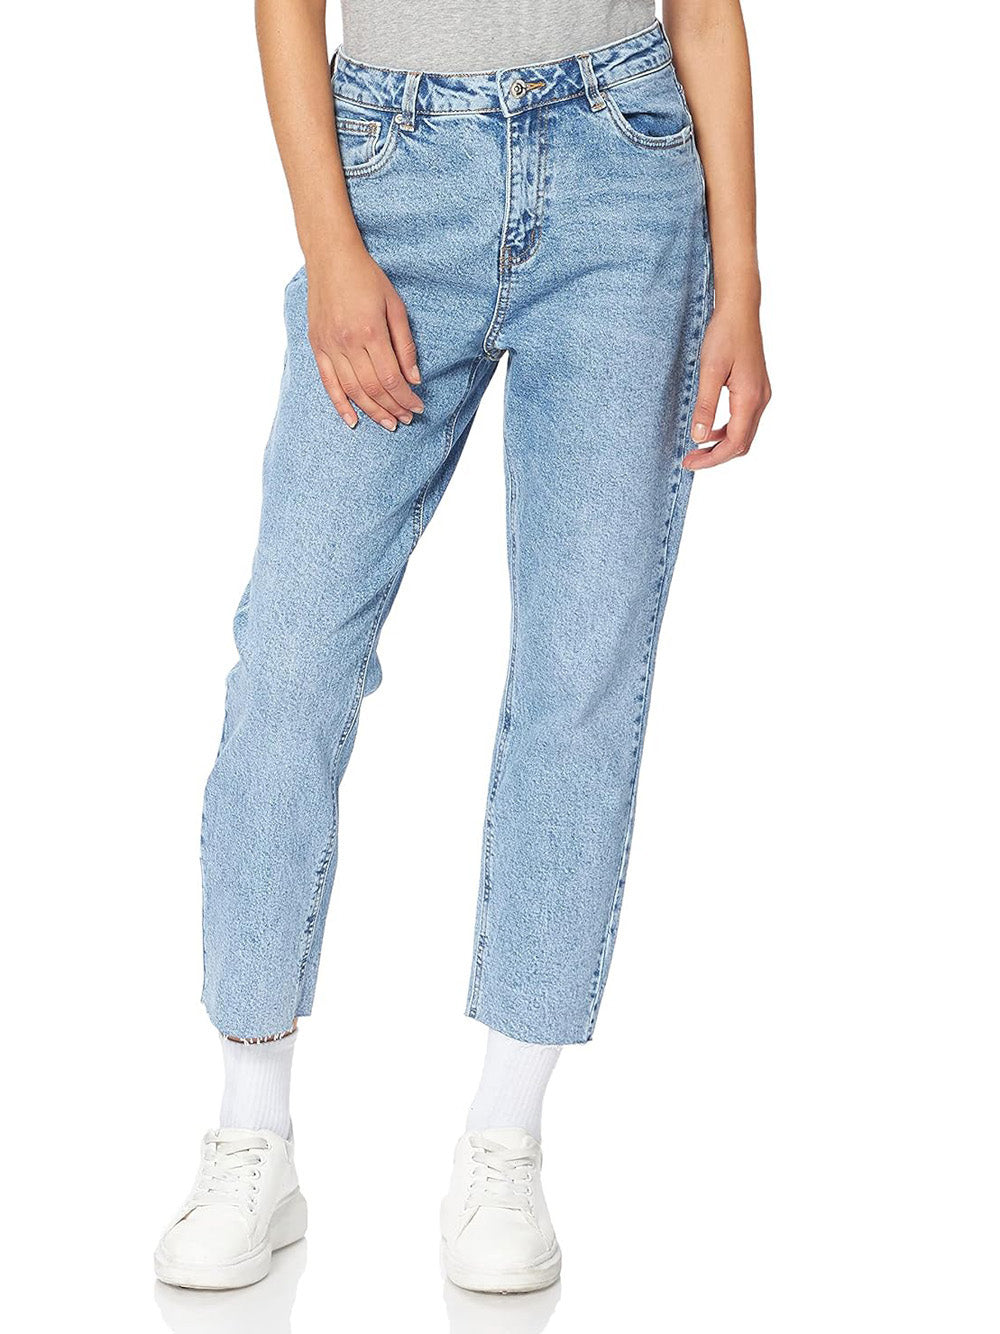 VERO MODA Jeans Donna - Blu modello 10247009